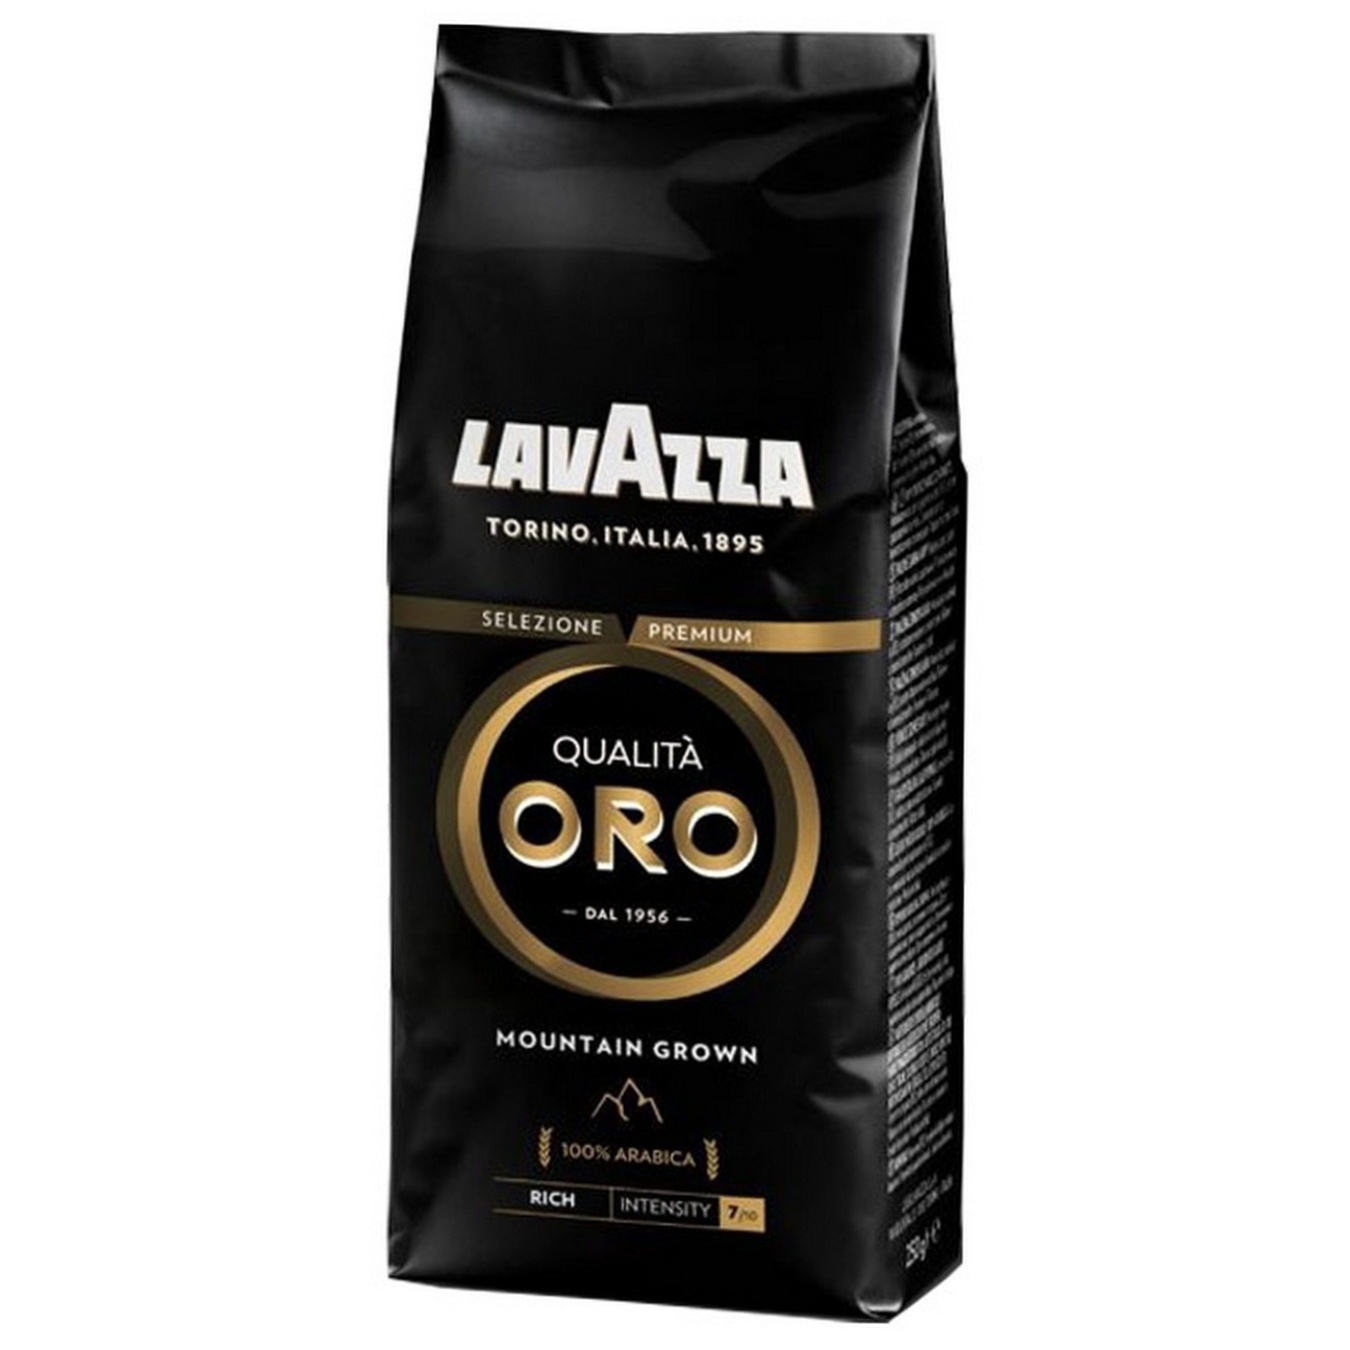 Lavazza Qualita Oro Grain Coffee 250g